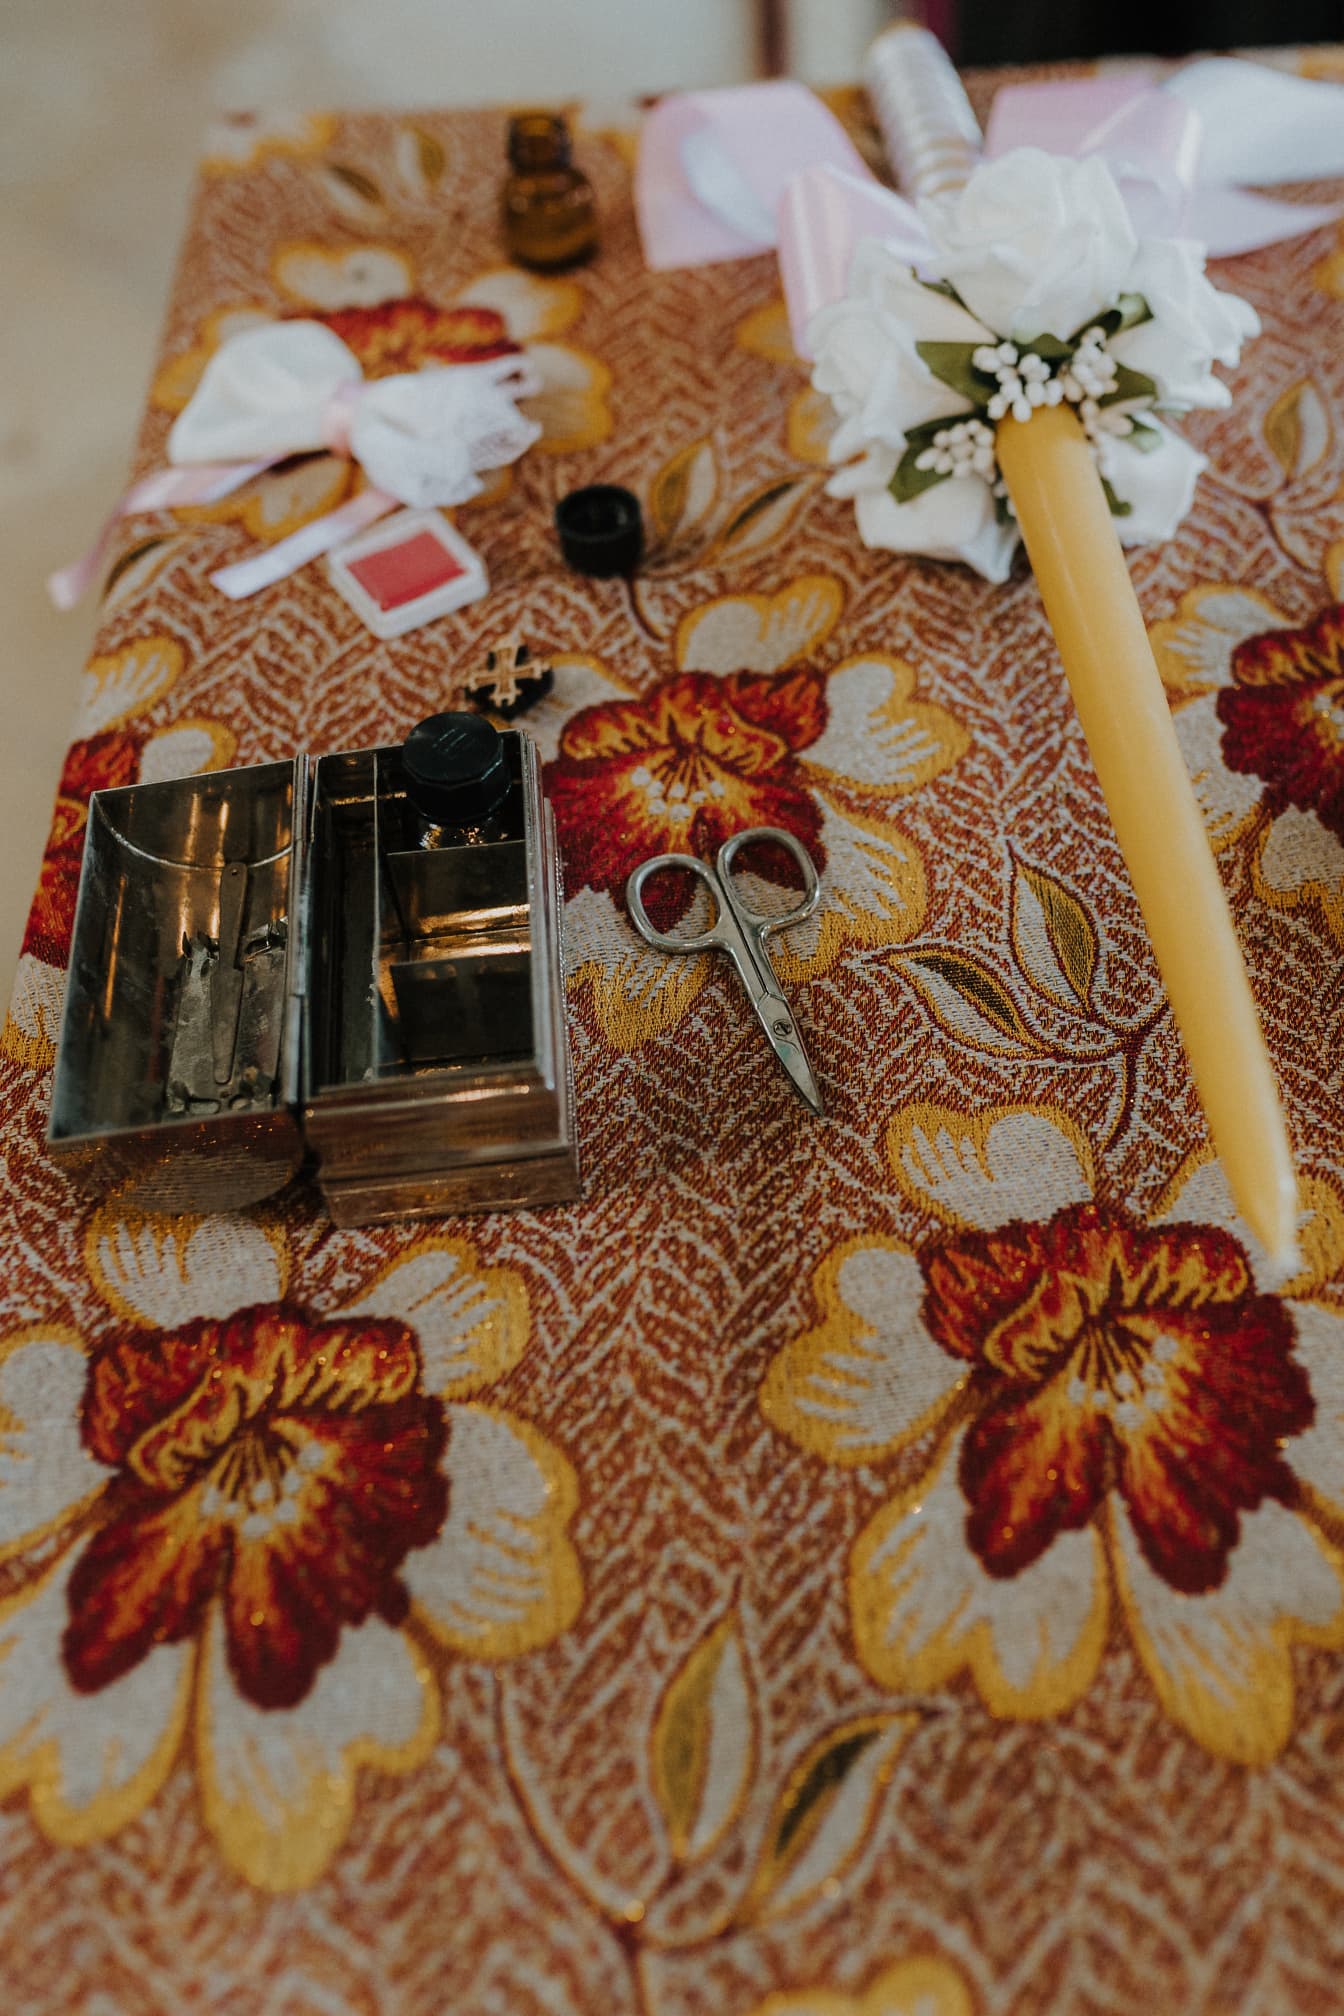 Boîte en métal avec des ciseaux et une bougie sur une nappe fleurie préparée pour la cérémonie de baptême